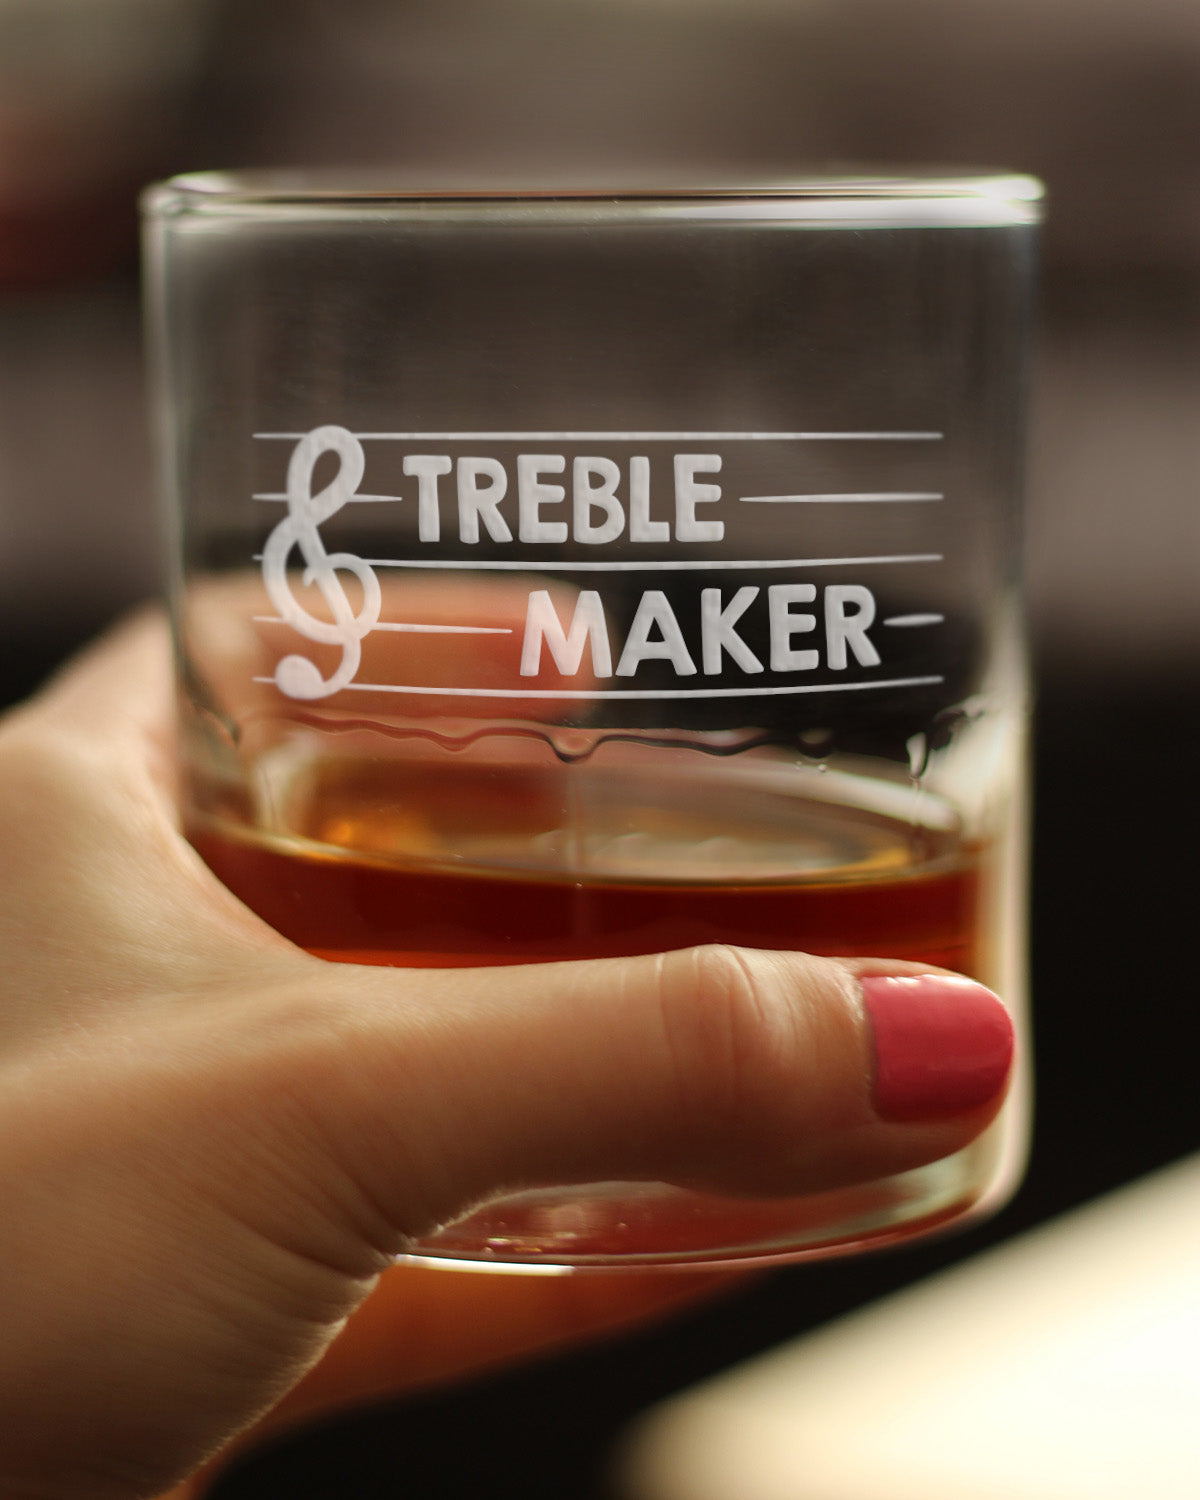 Treble Maker - Whiskey Rocks Glass - Cute Unique Music Teacher Gifts for Musical Men &amp; Women - 10.25 Oz